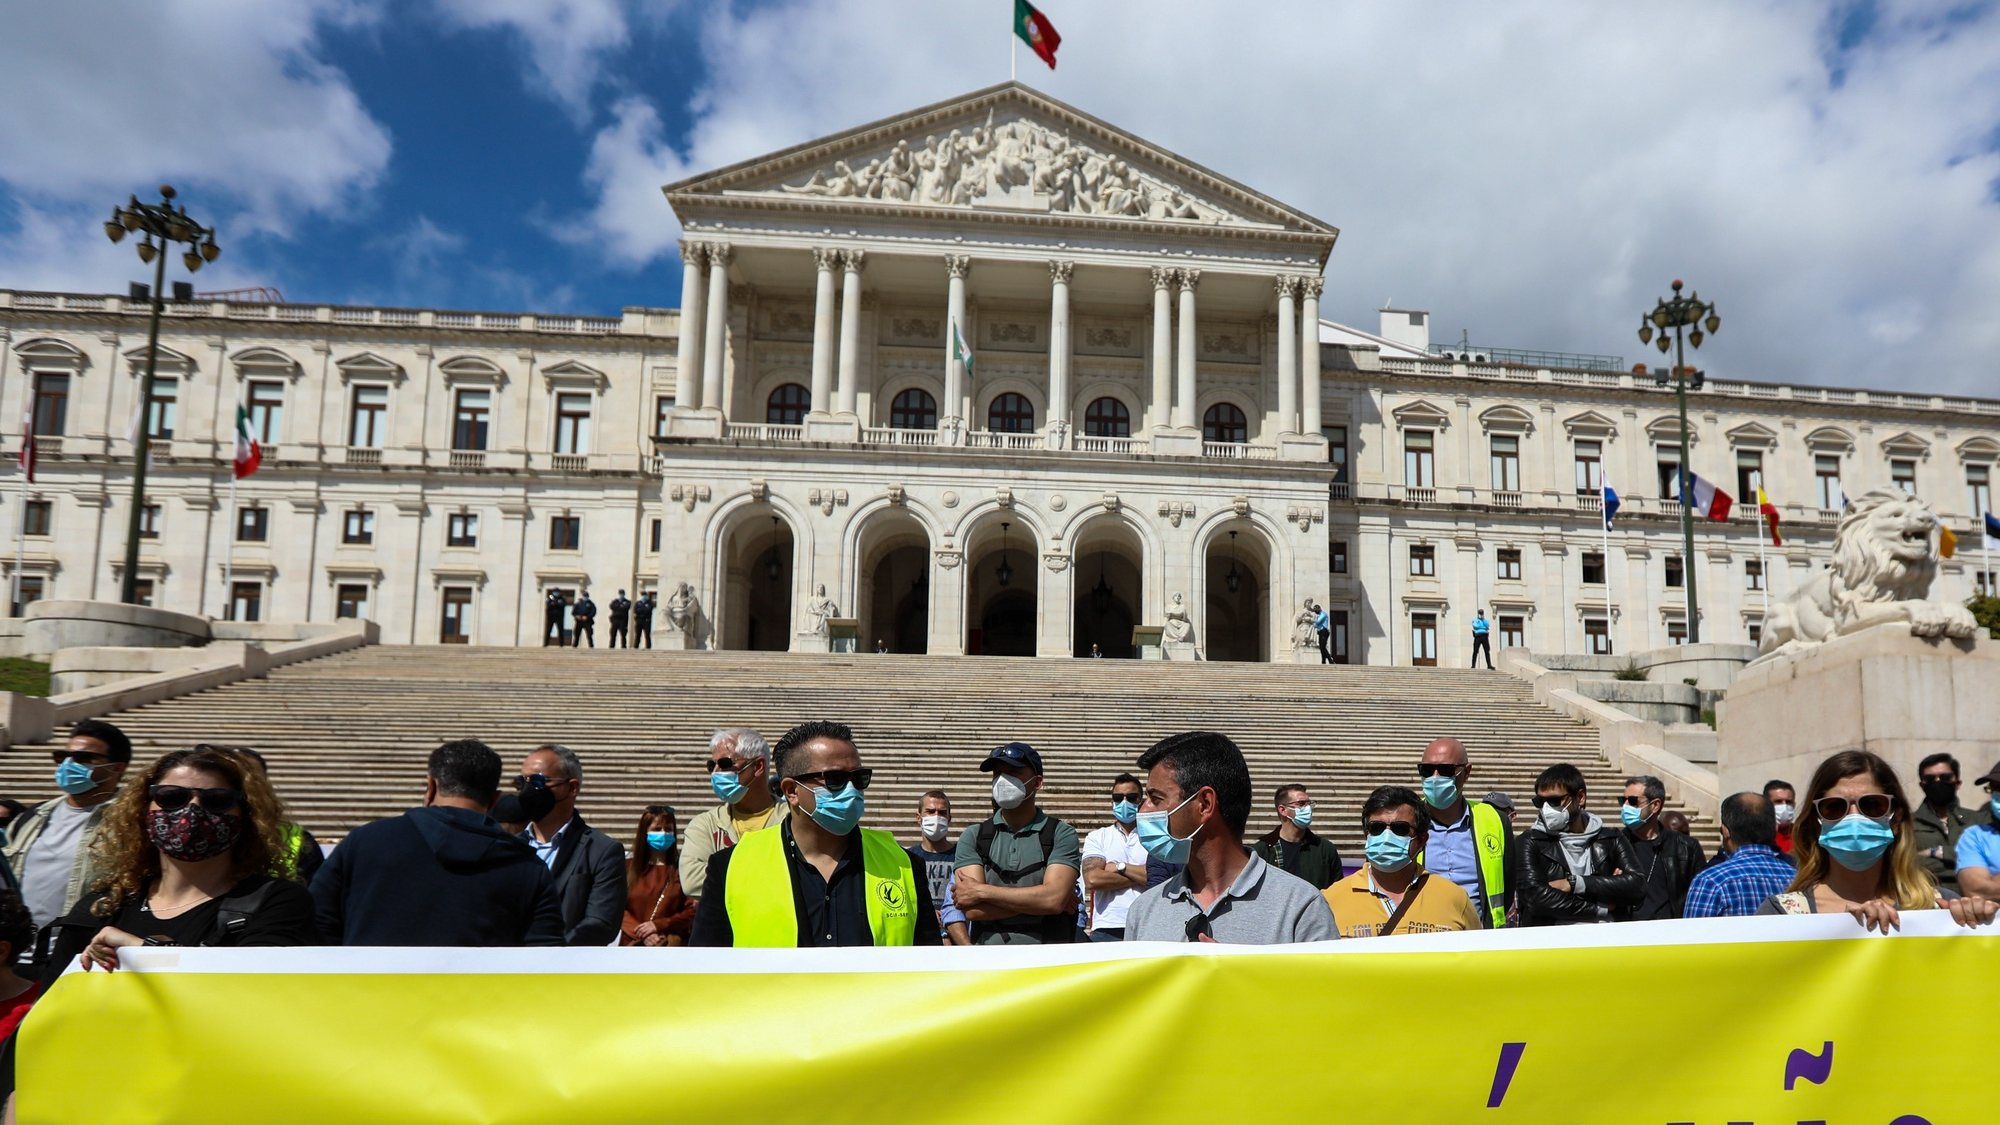 Inspetores do Serviço de Estrangeiros e Fronteiras (SEF) manifestam-se em frente da Assembleia da República, num protesto organizado pelo Sindicato da Carreira de Investigação e Fiscalização do Serviço de Estrangeiros e Fronteiras contra a intenção do Governo de extinguir o serviço, em Lisboa, 25 de março de 2021. ANTÓNIO COTRIM/LUSA